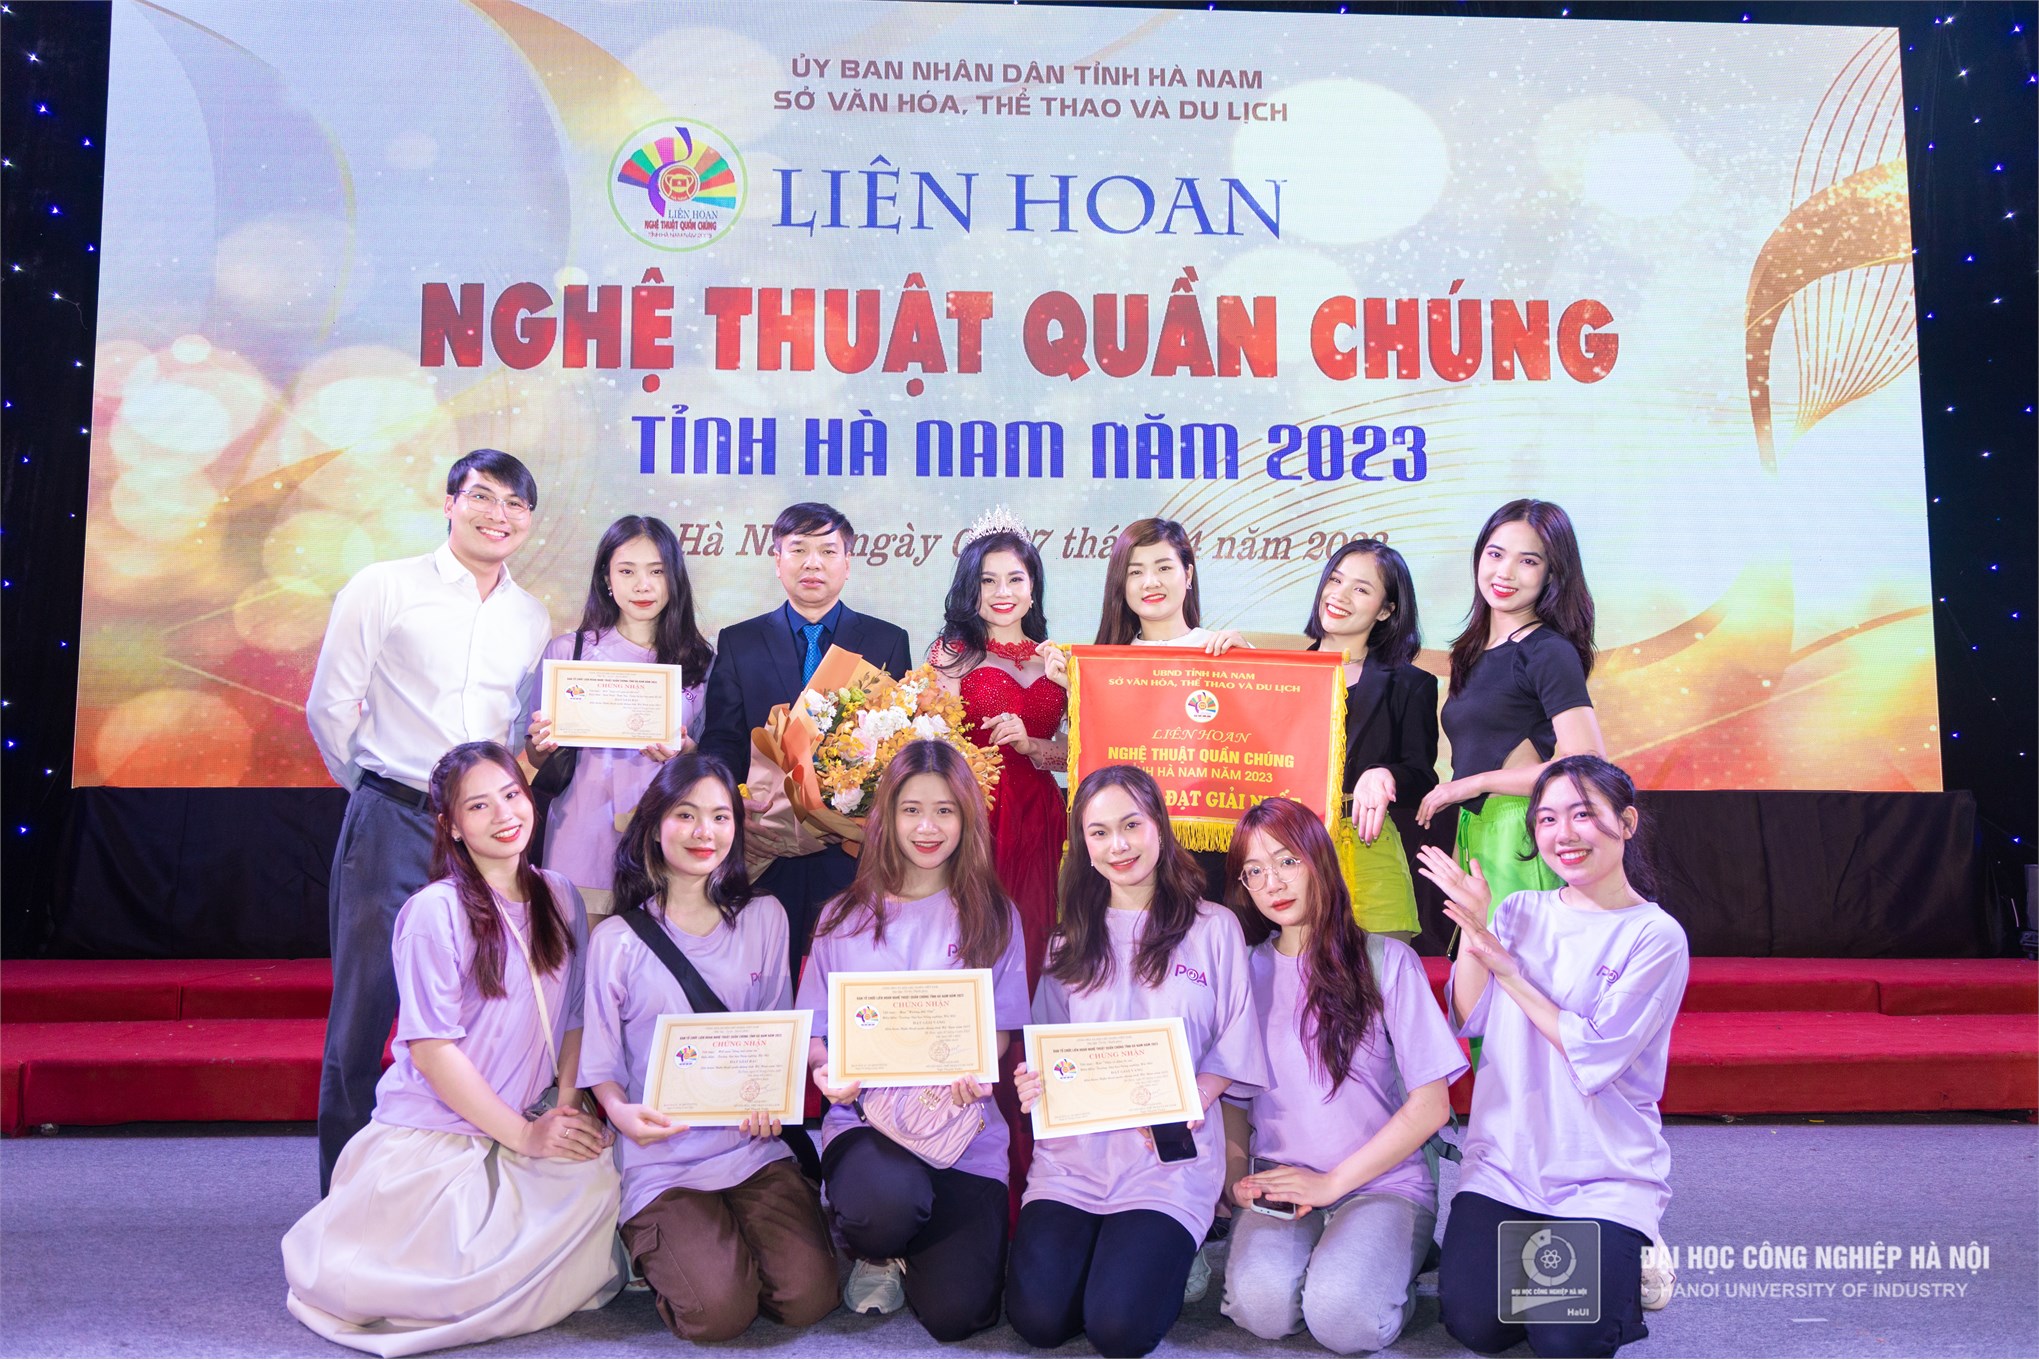 Đại học Công nghiệp Hà Nội đạt giải Nhất toàn đoàn Liên hoan nghệ thuật quần chúng tỉnh Hà Nam 2023